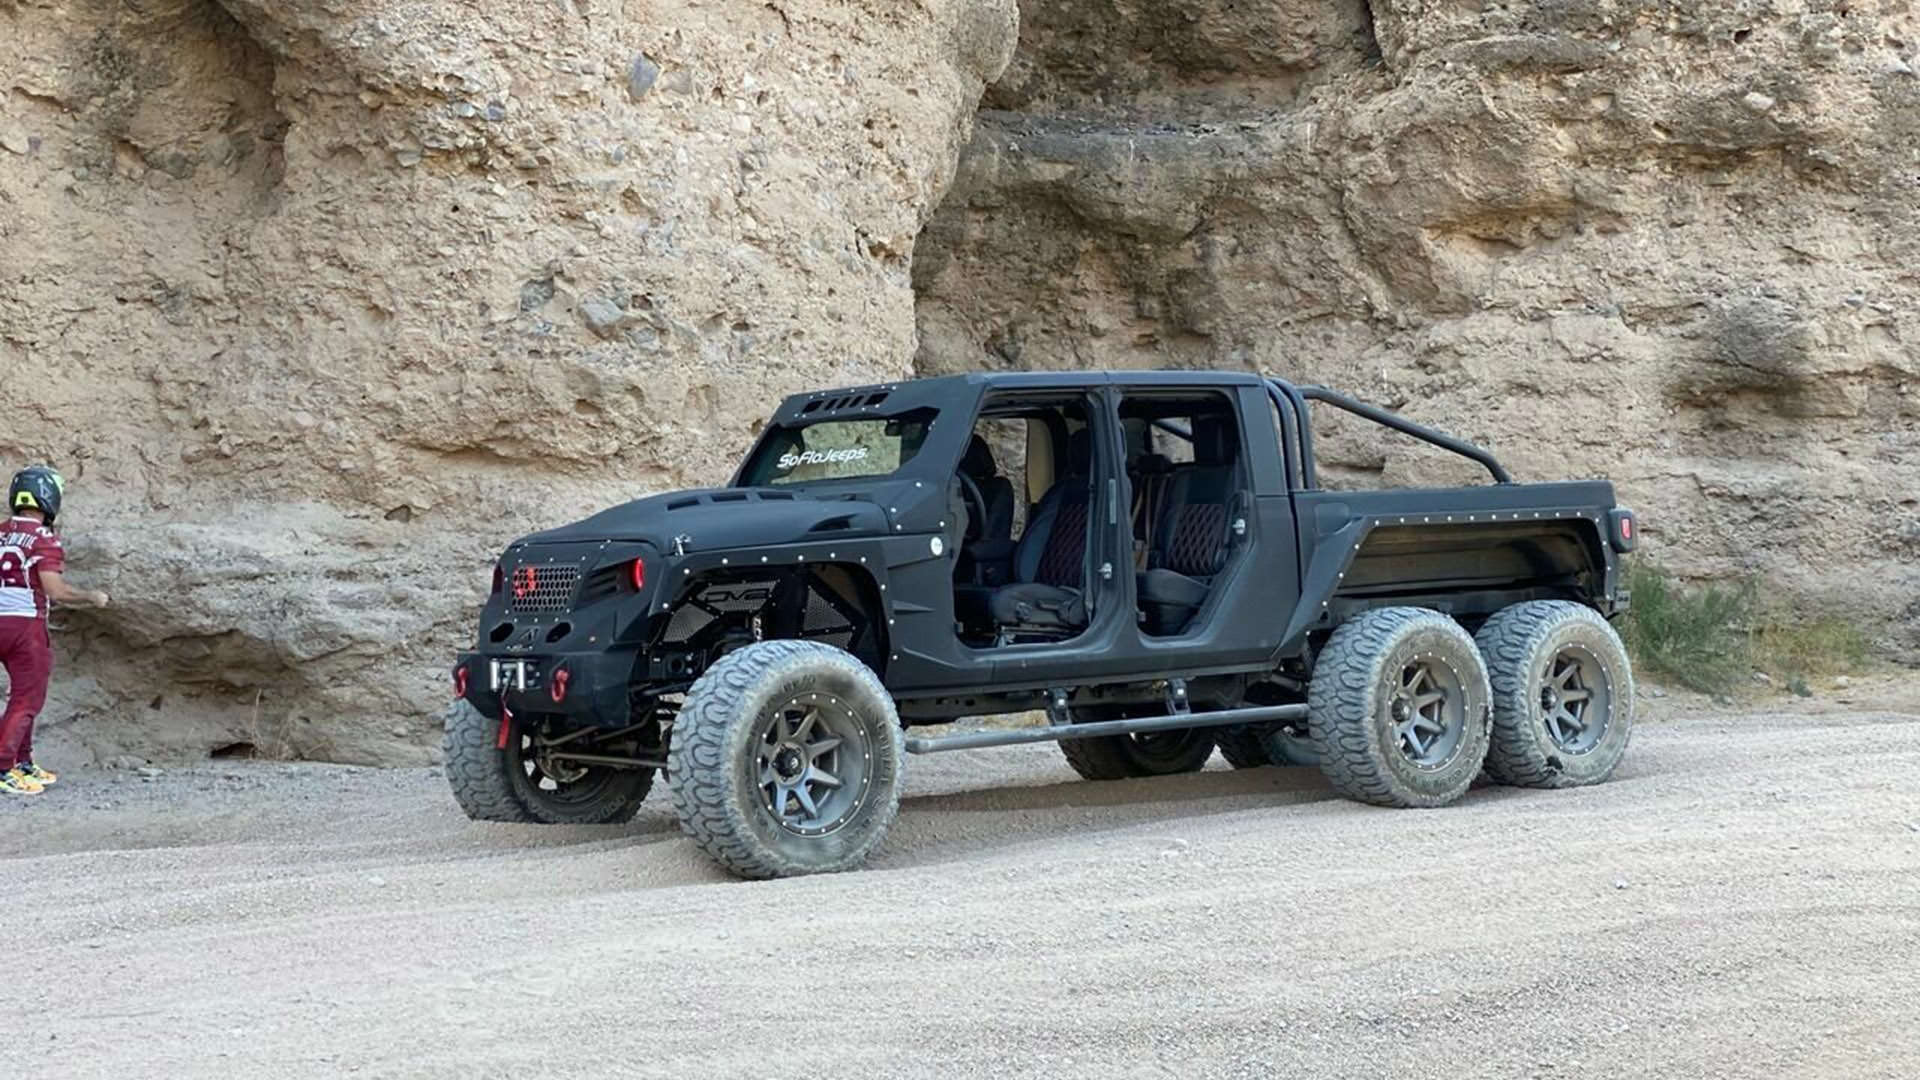 خودرو جیپ گلادیاتور / Jeep Gladiator مجهز به 6 چرخ در کوهستان